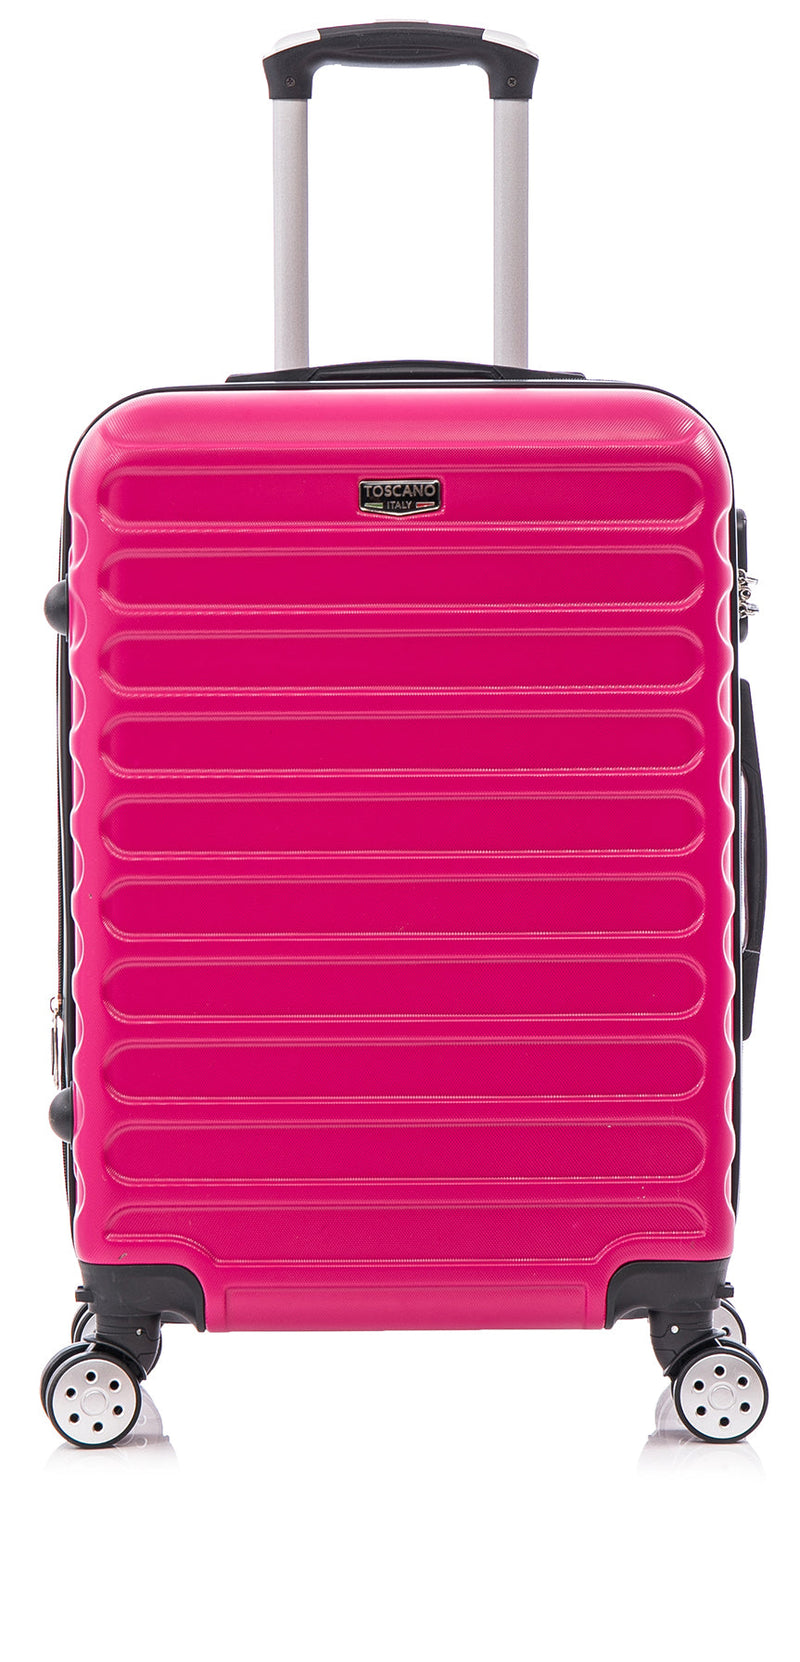 TOSCANO RADIOSITA 19" Expandable Suitcase Luggage